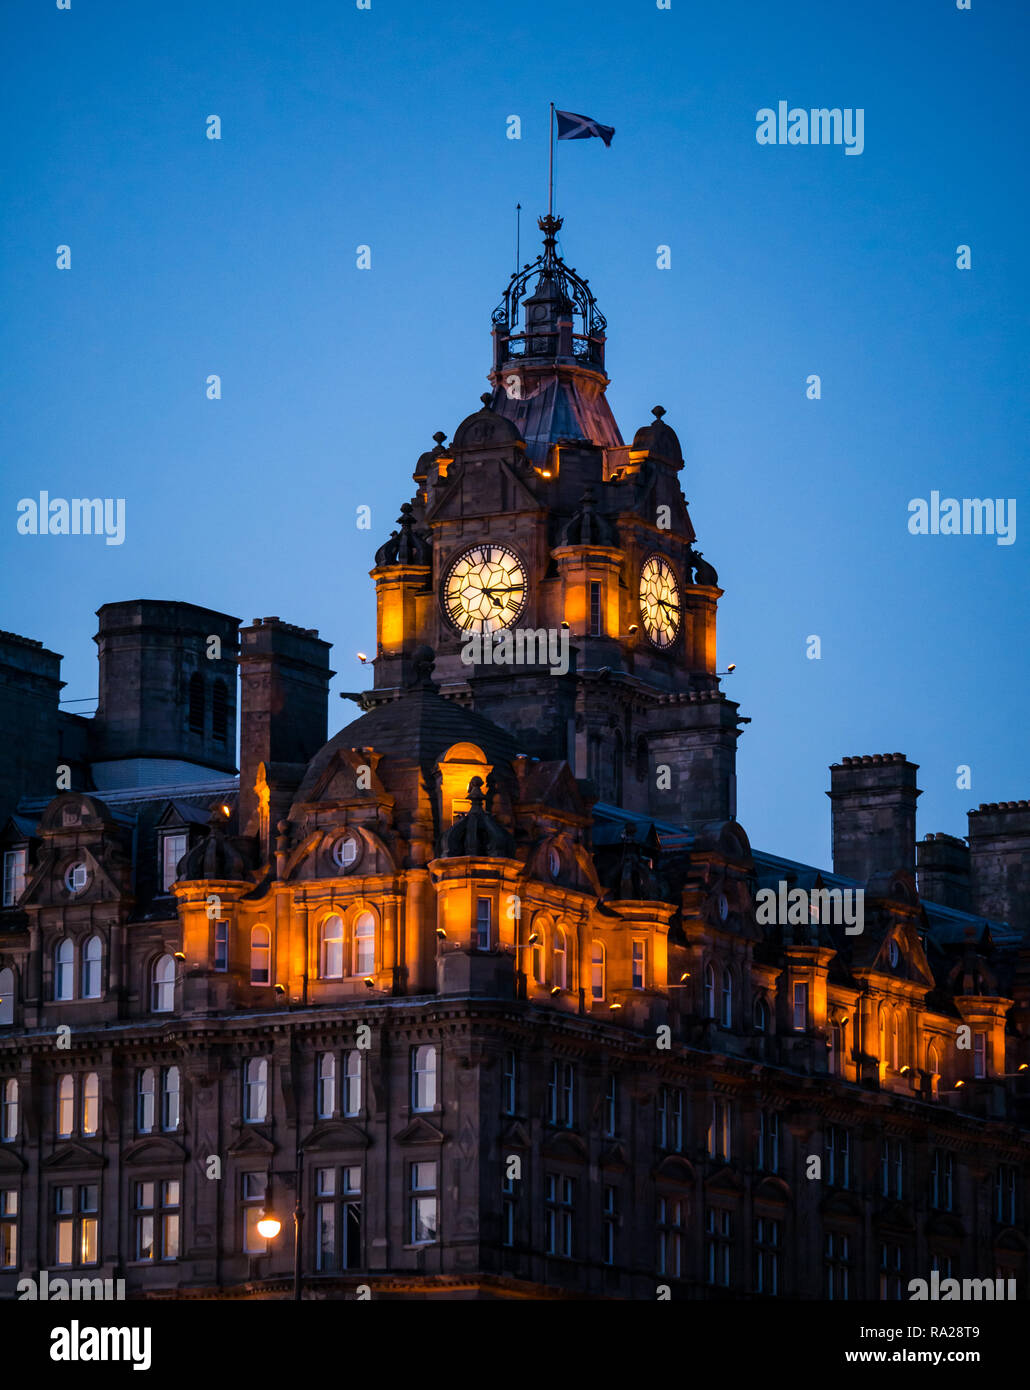 Edificio in stile vittoriano, Rocco Forte Balmoral Hotel torre dell orologio illuminato di notte, Princes Street, Edimburgo, Scozia, Regno Unito Foto Stock